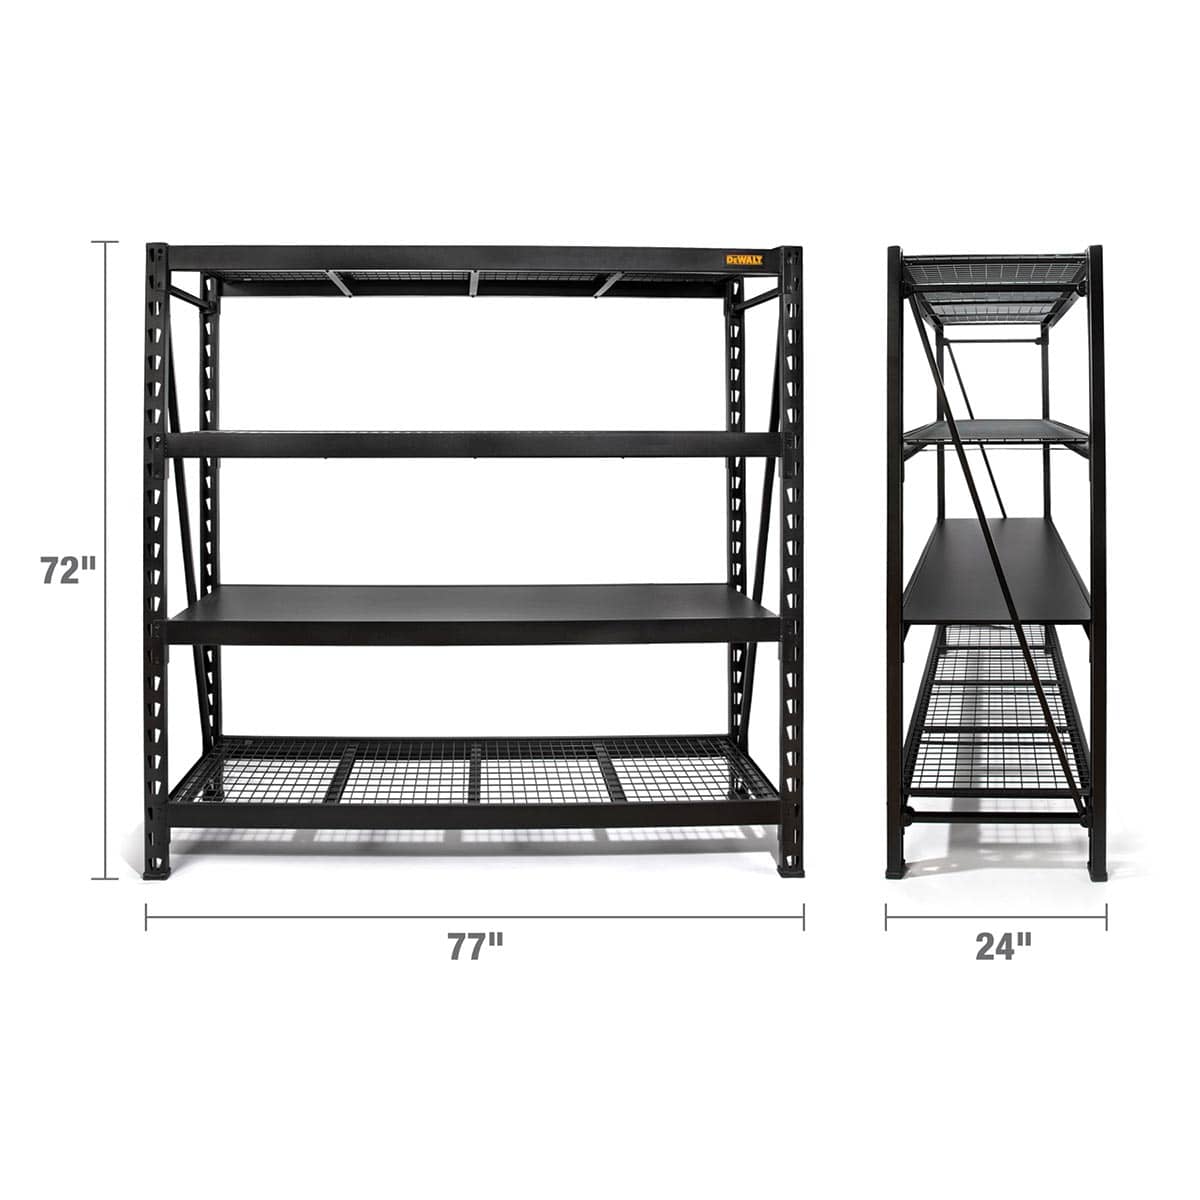 4-Shelf 6' Industrial Storage Rack